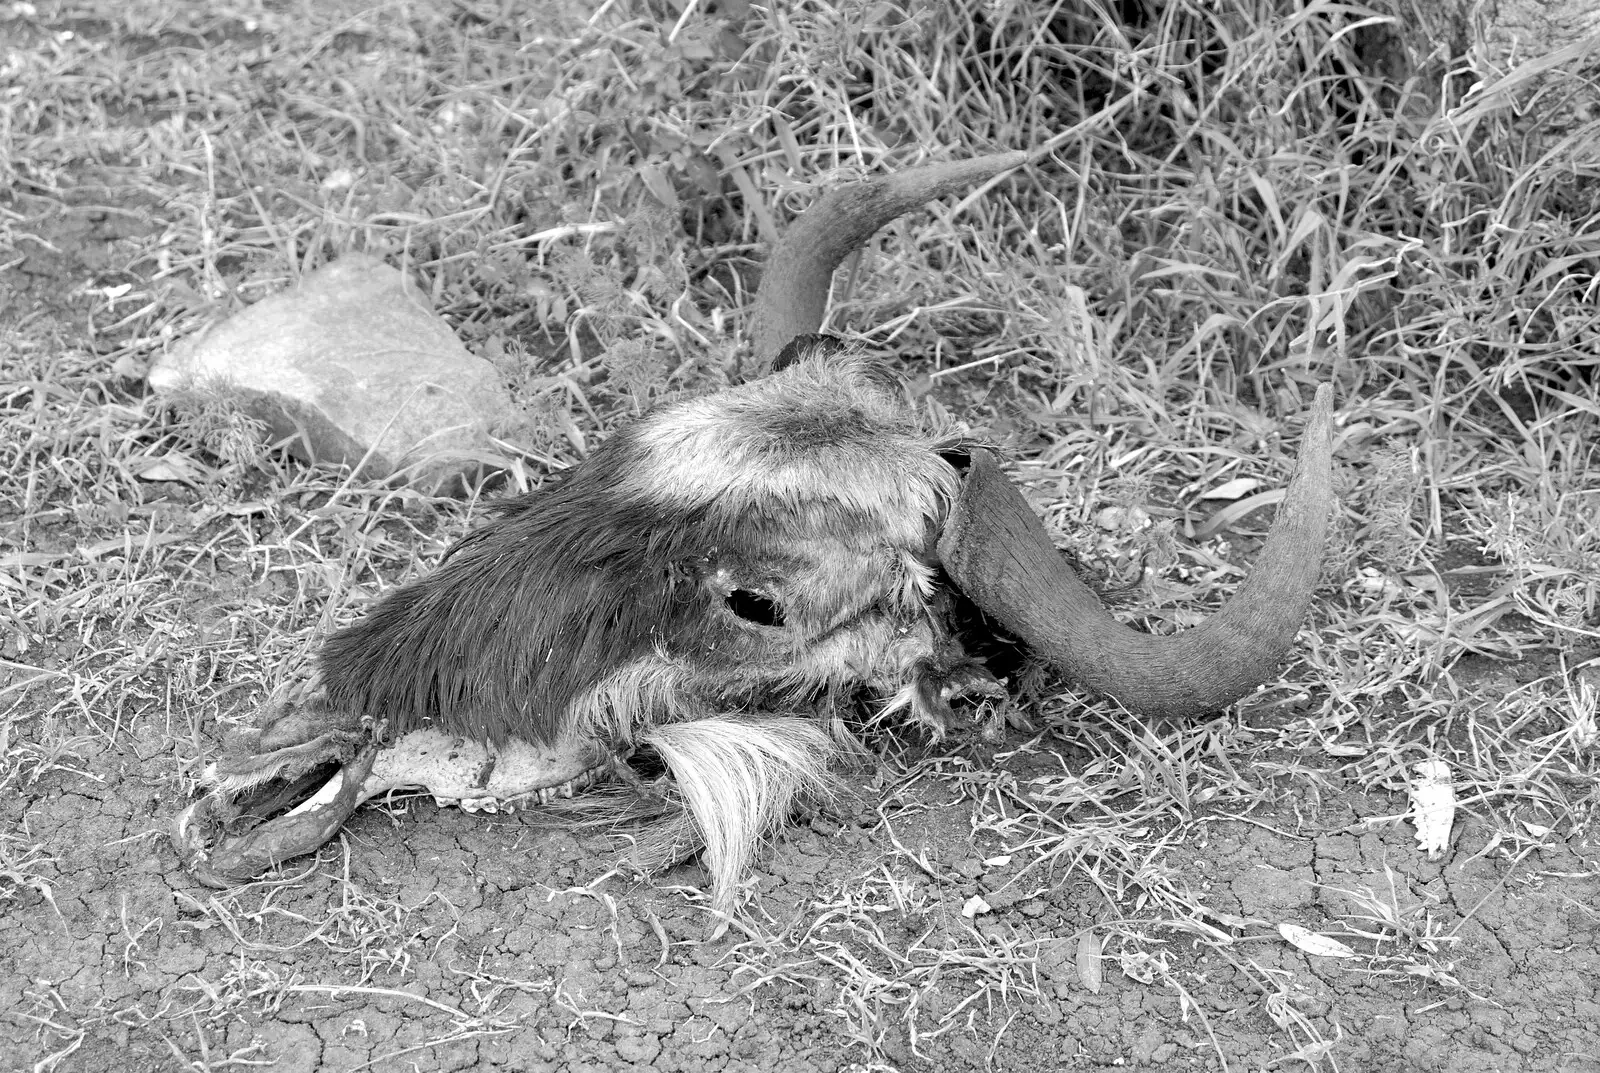 The skull of a wildebeest, hair still attached, from Maasai Mara Safari and a Maasai Village, Ololaimutia, Kenya - 5th November 2010